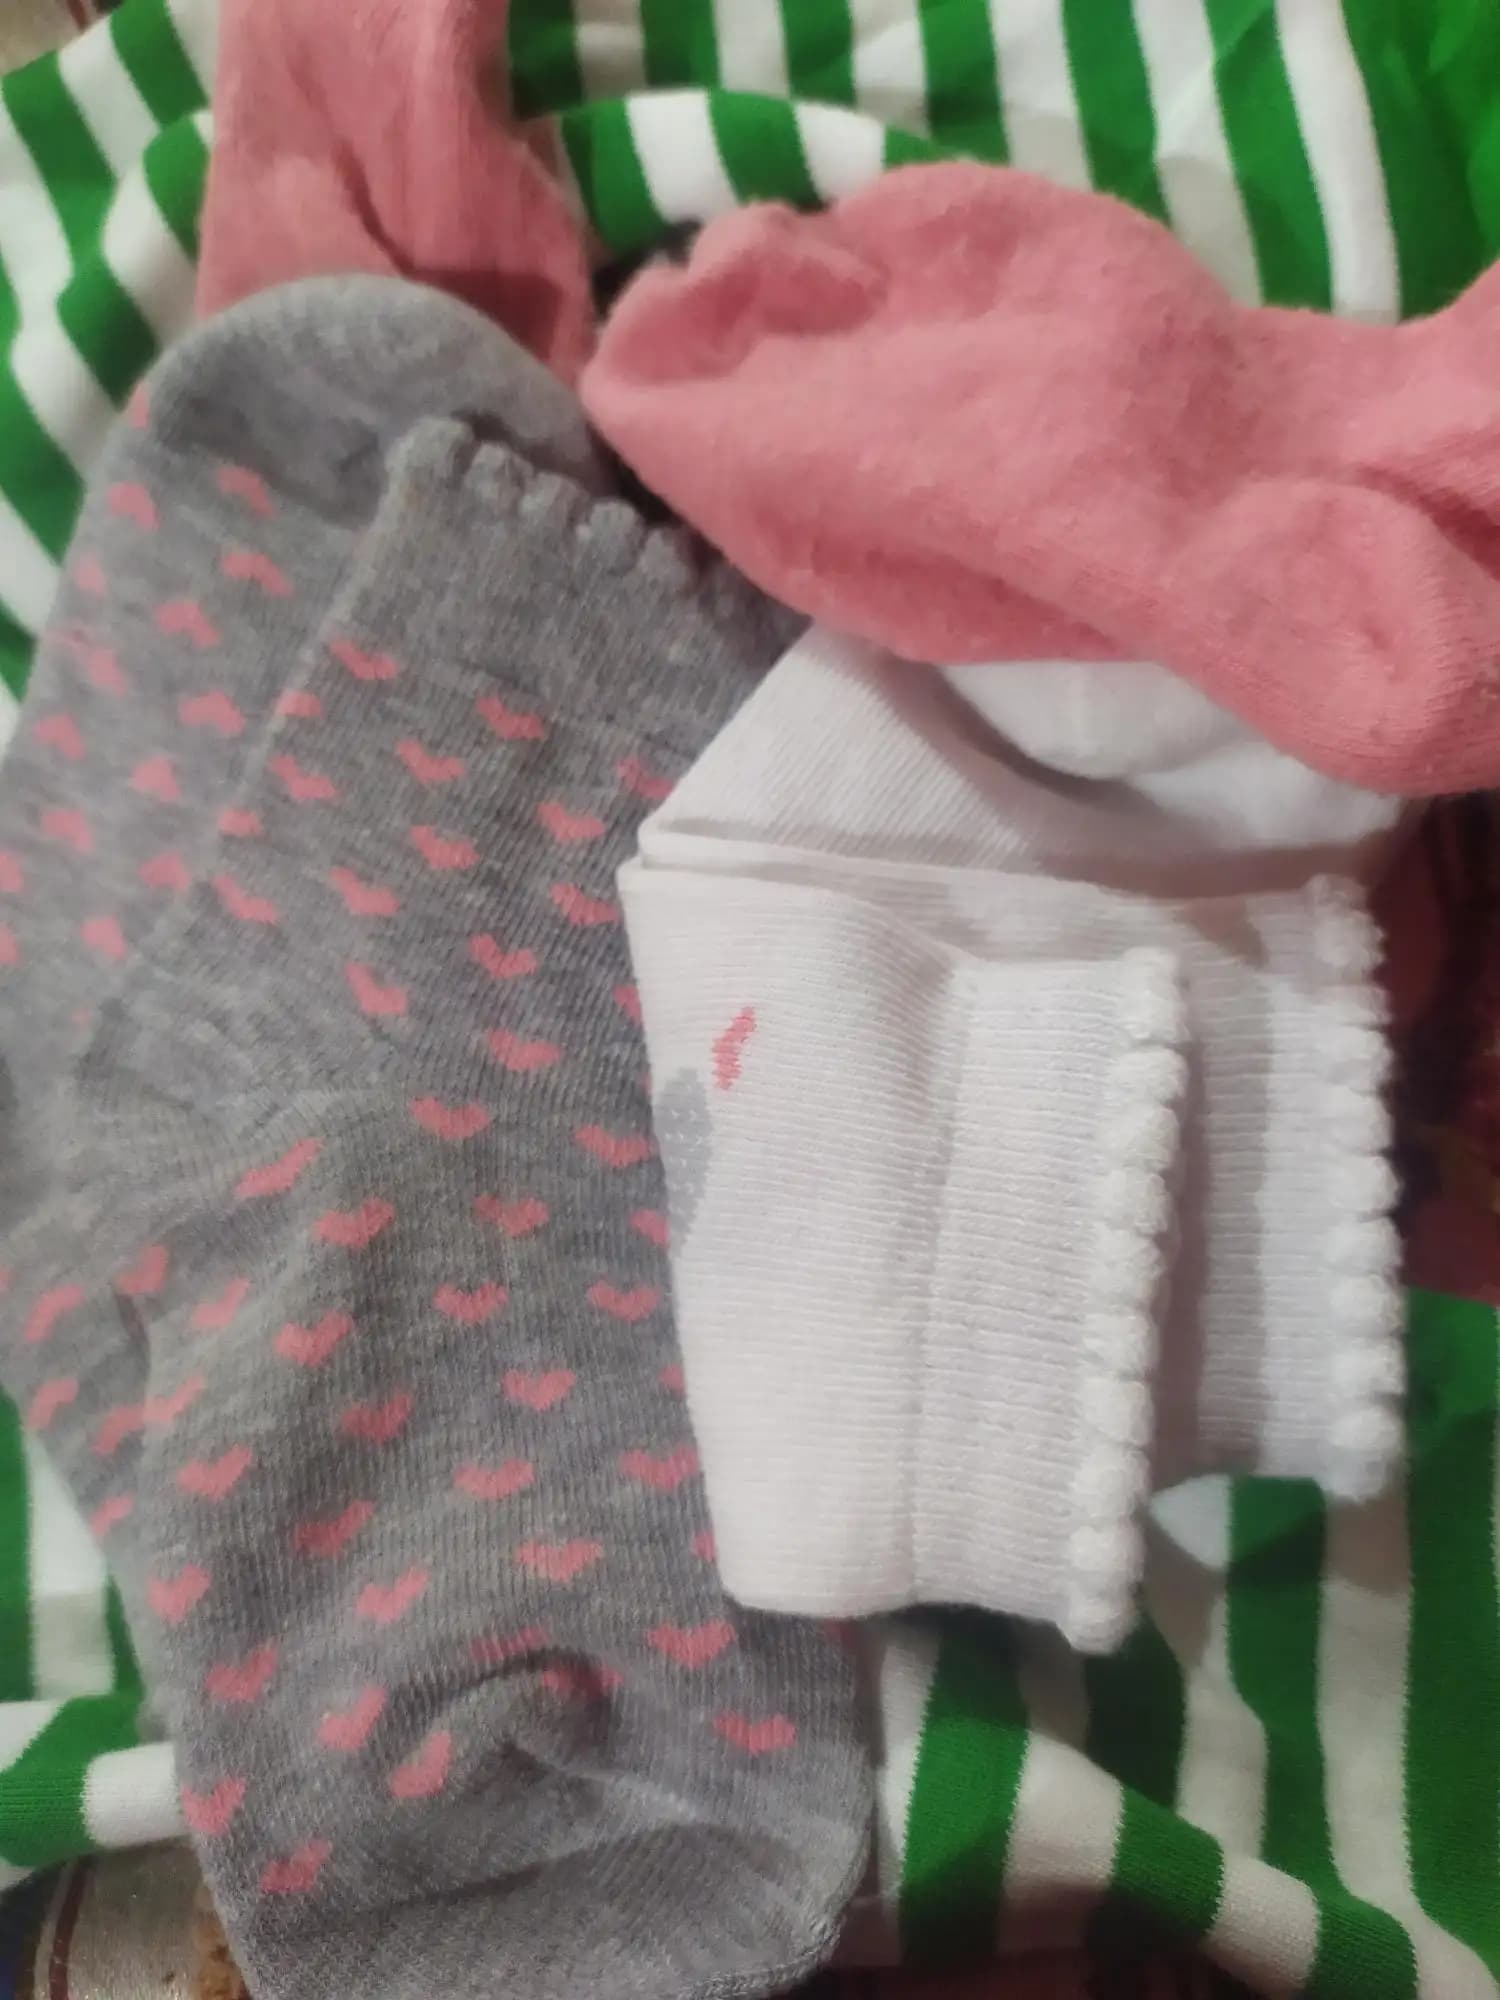 Baby Socks 12-24 Months | Elasticated & Antibacterial | Breathable, Shrinkable, Sweat & Wear Resistant | Unisex Dark Nights | Pack of 3